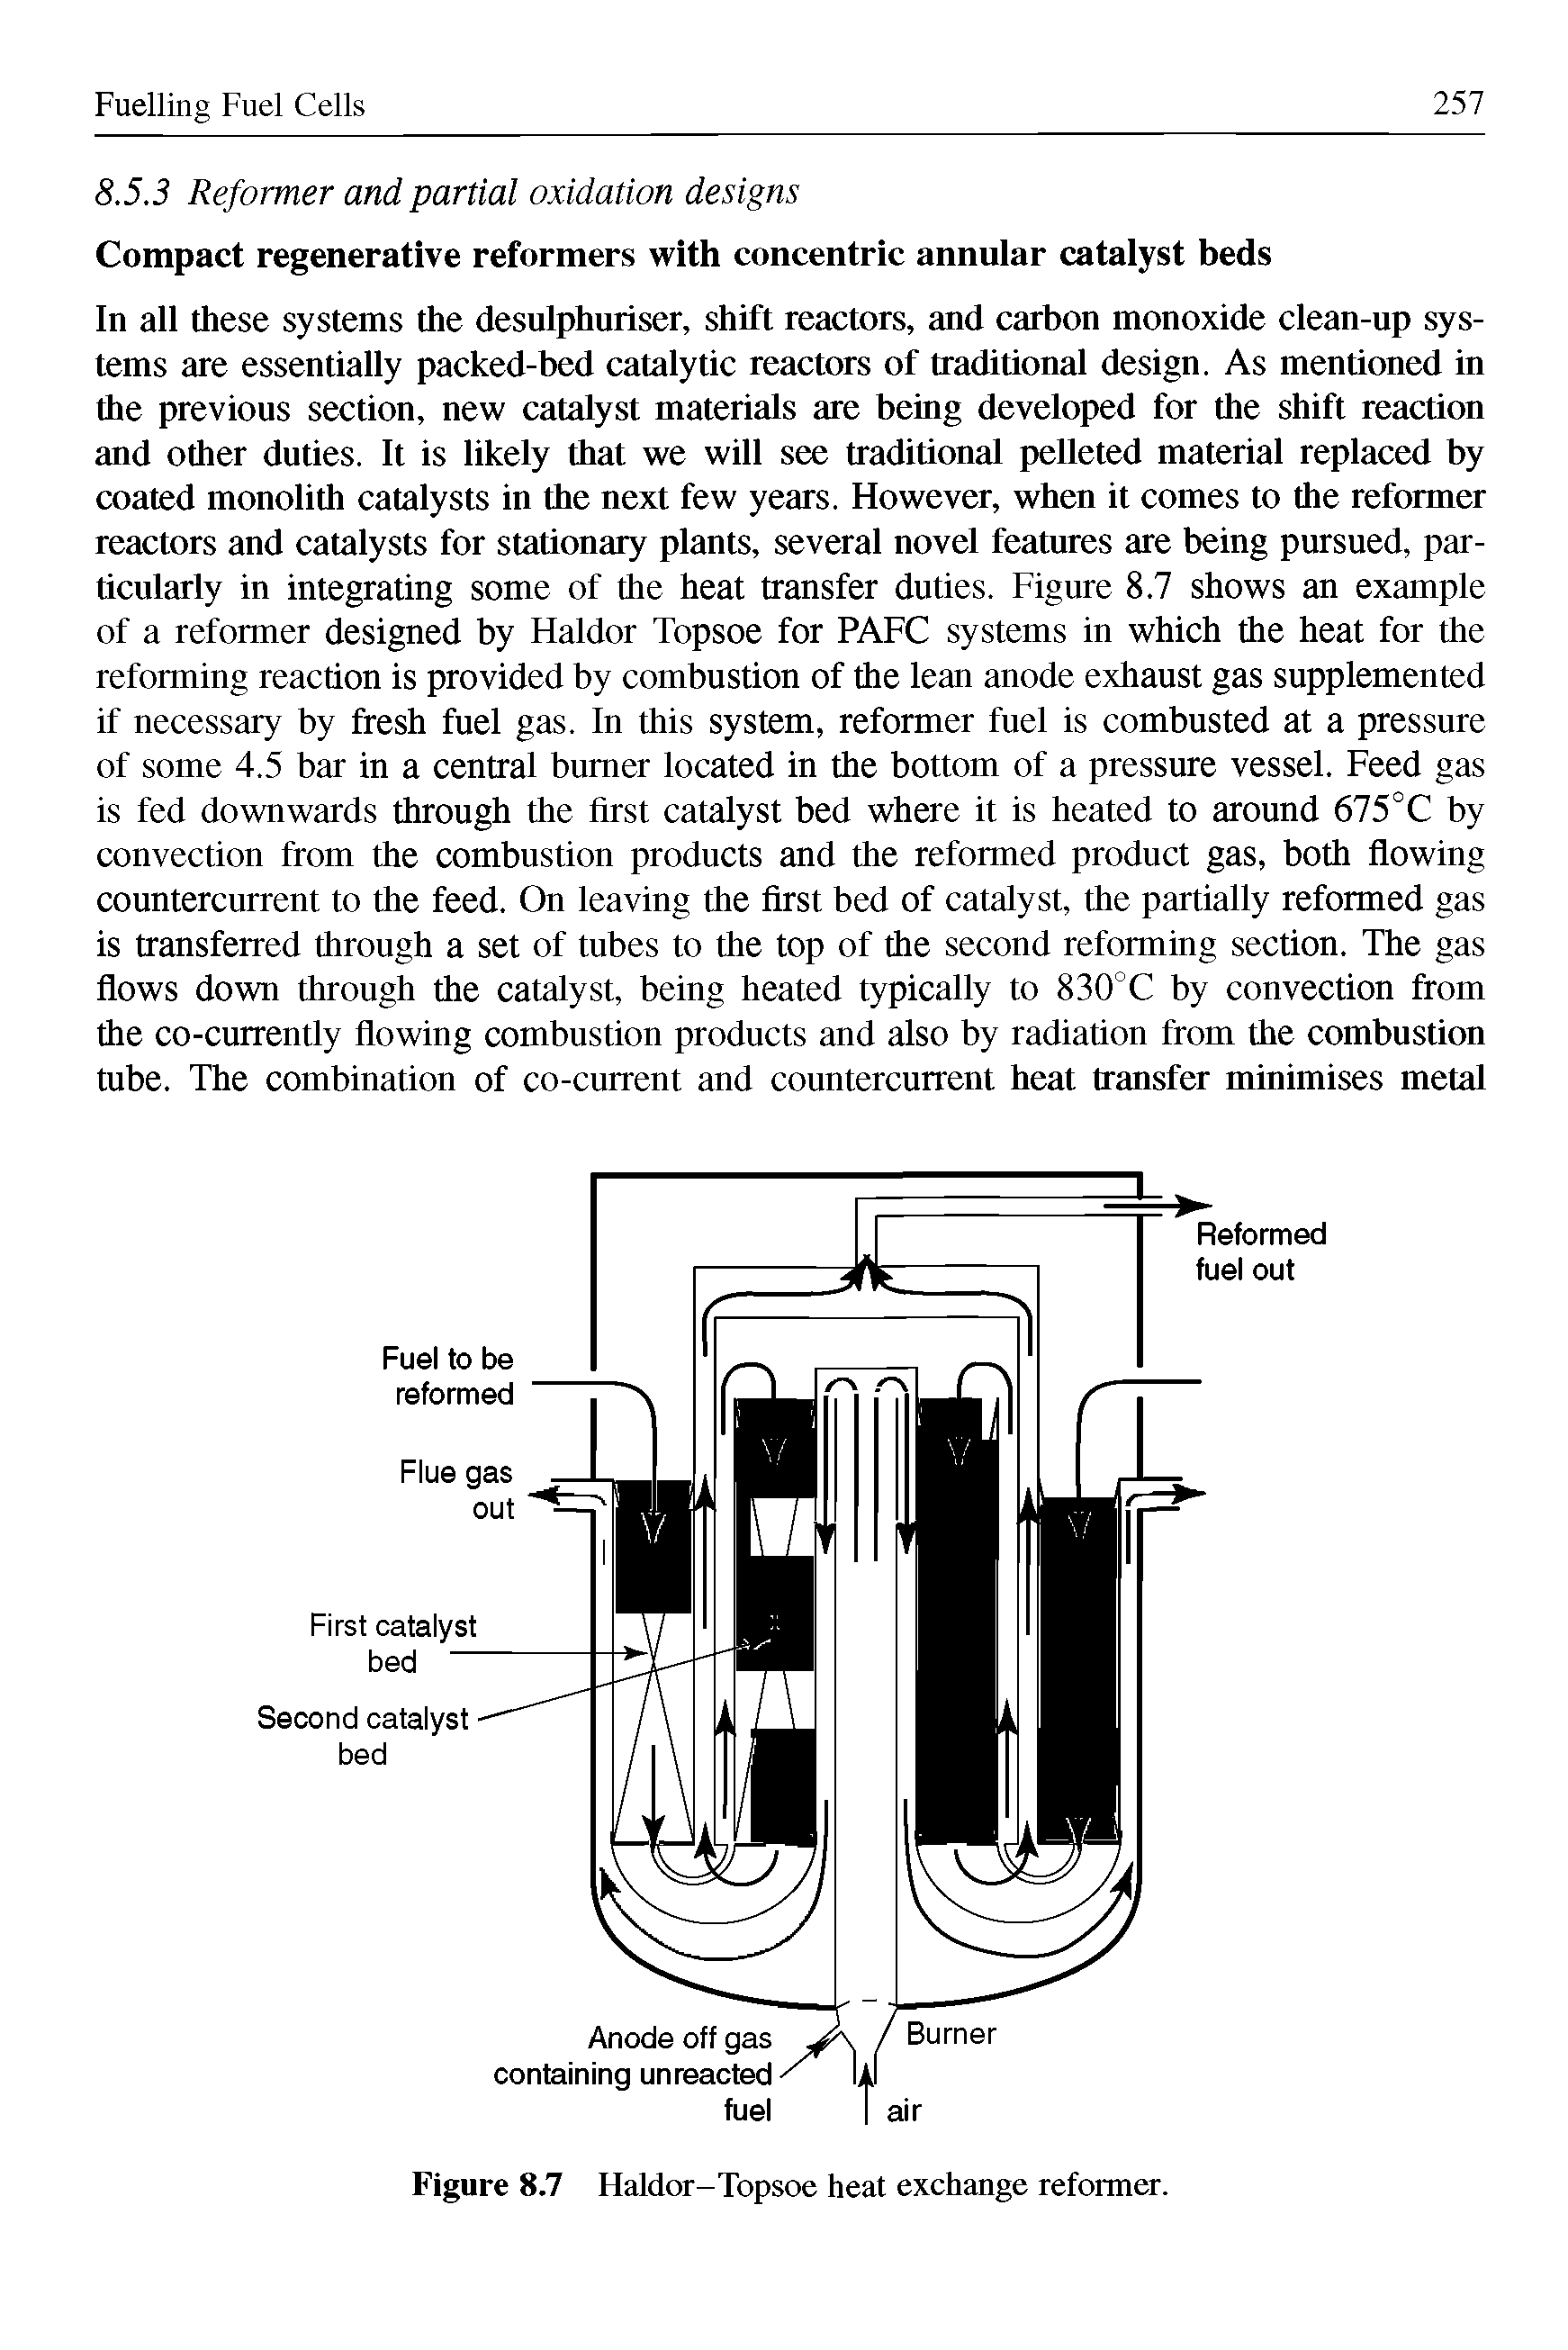 Figure 8.7 Haldor-Topsoe heat exchange reformer.